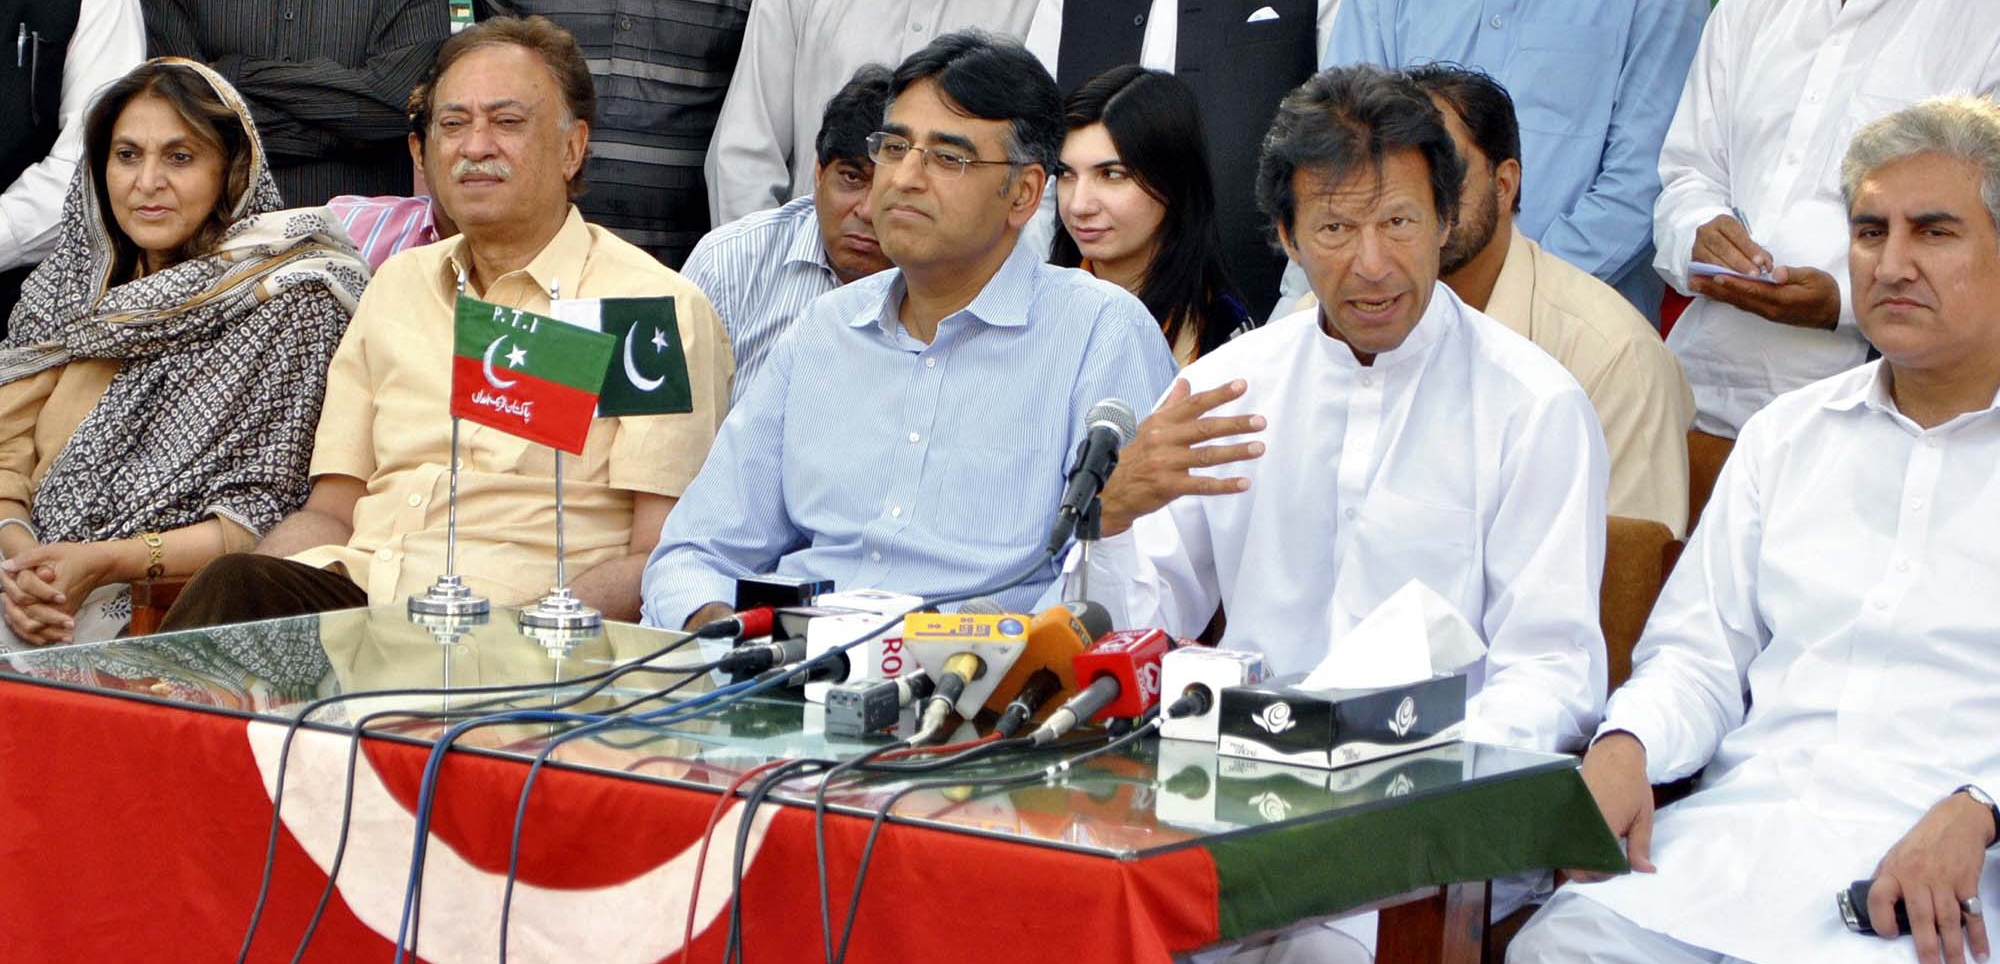 former engro ceo asad umar with pti chief imran khan at a press conference at pti secretariat in islamabad photo sana